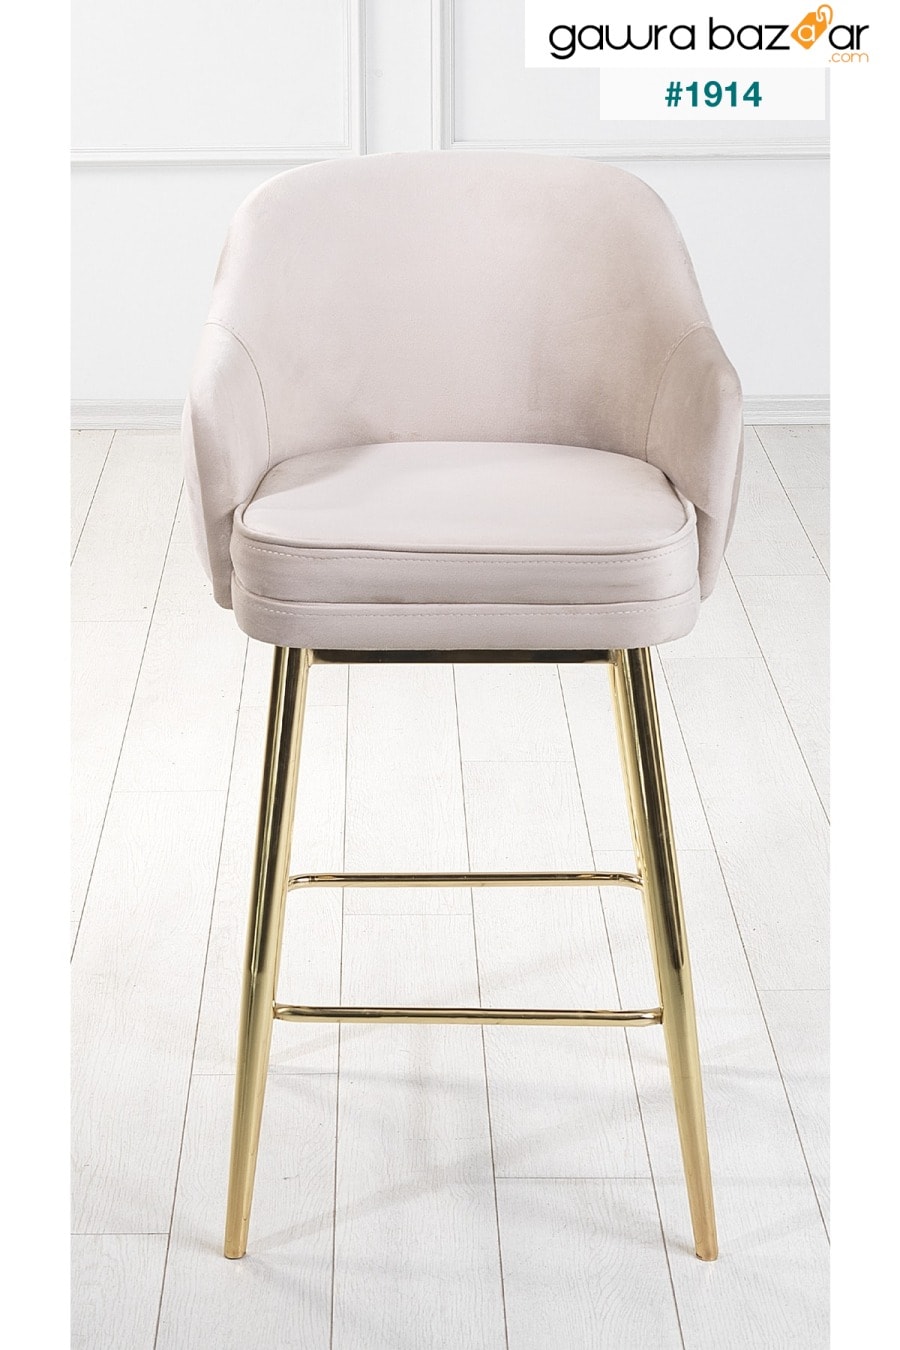 2 قطعة كرسي مطبخ وبار من تيتان أدا - كرسي مرتفع - قماش قابل للإزالة للوجه - أرجل ذهبية Pİ MOBİLYA 1